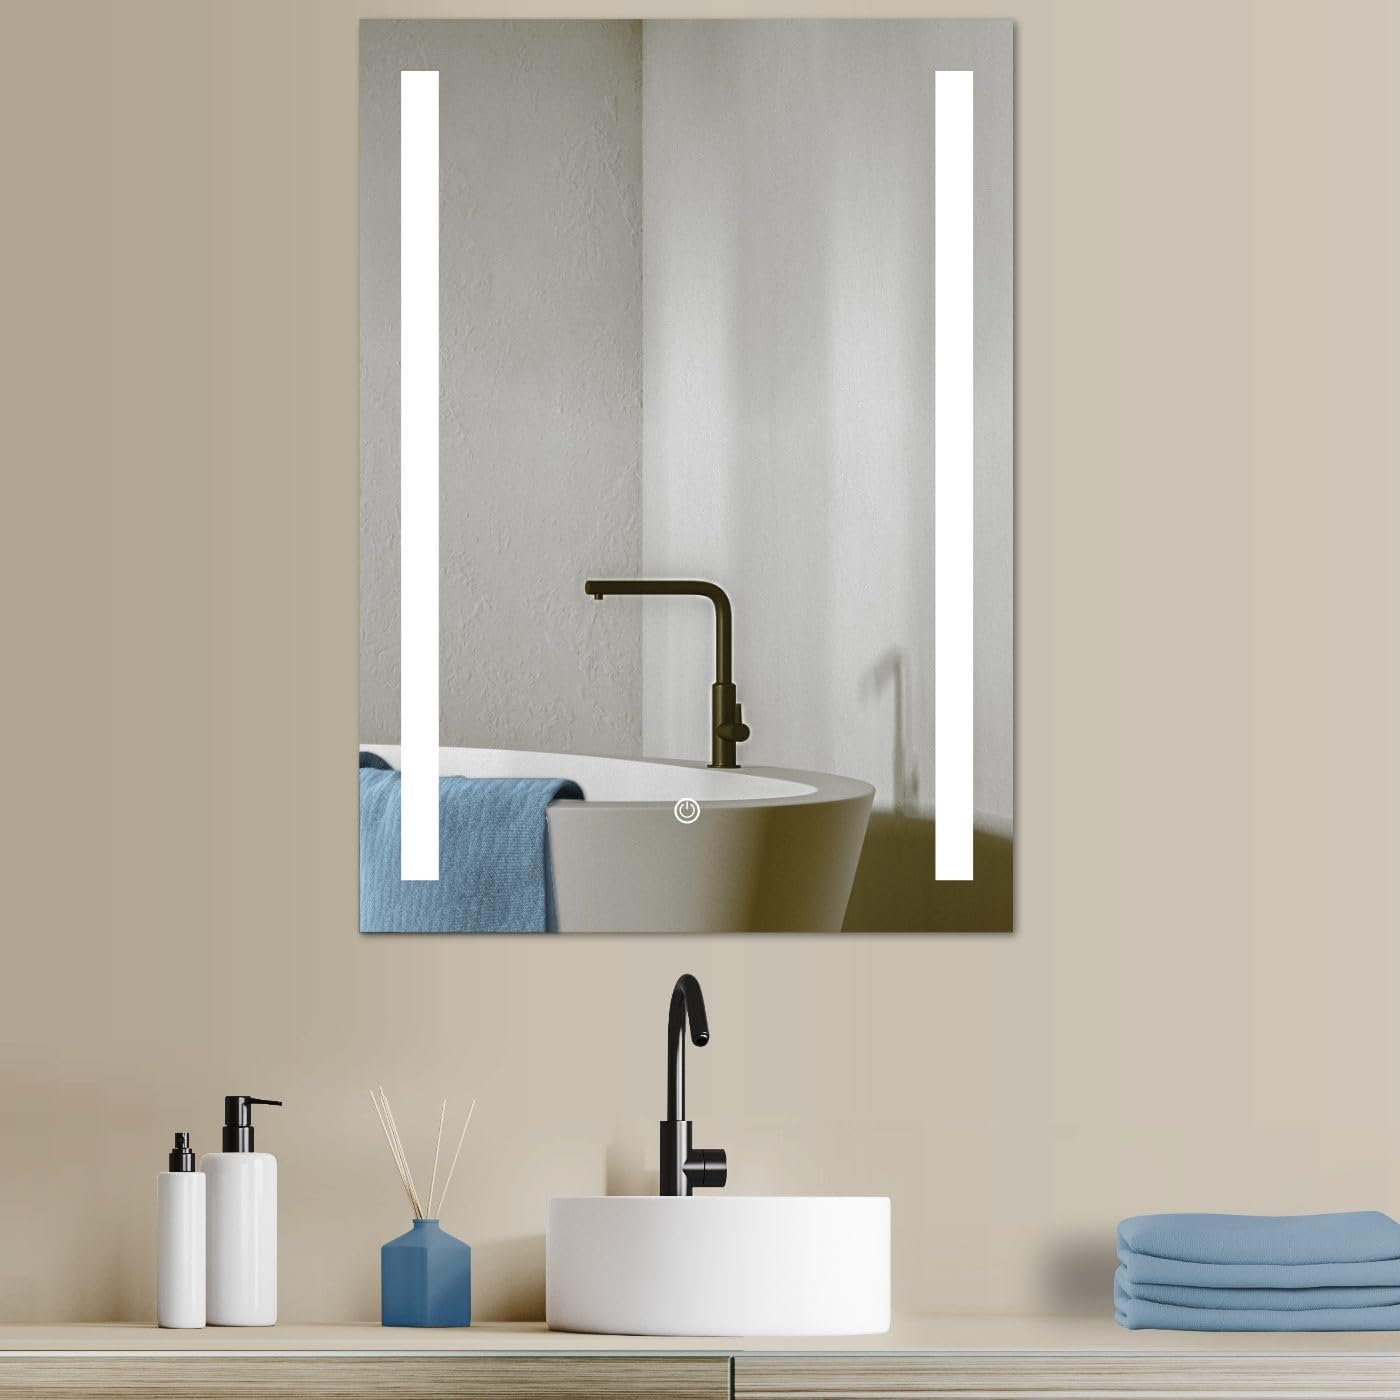 HOKO Badspiegel LED Design Wandspiegel 50x70/60x80cm+ LED Wechsel (Warmweiß - Kaltweiß - Neutral. Licht mit Touch Schalter und mit Wandschalter einschaltbar. Memory-Funktion.IP44, 5mm HD Glass)